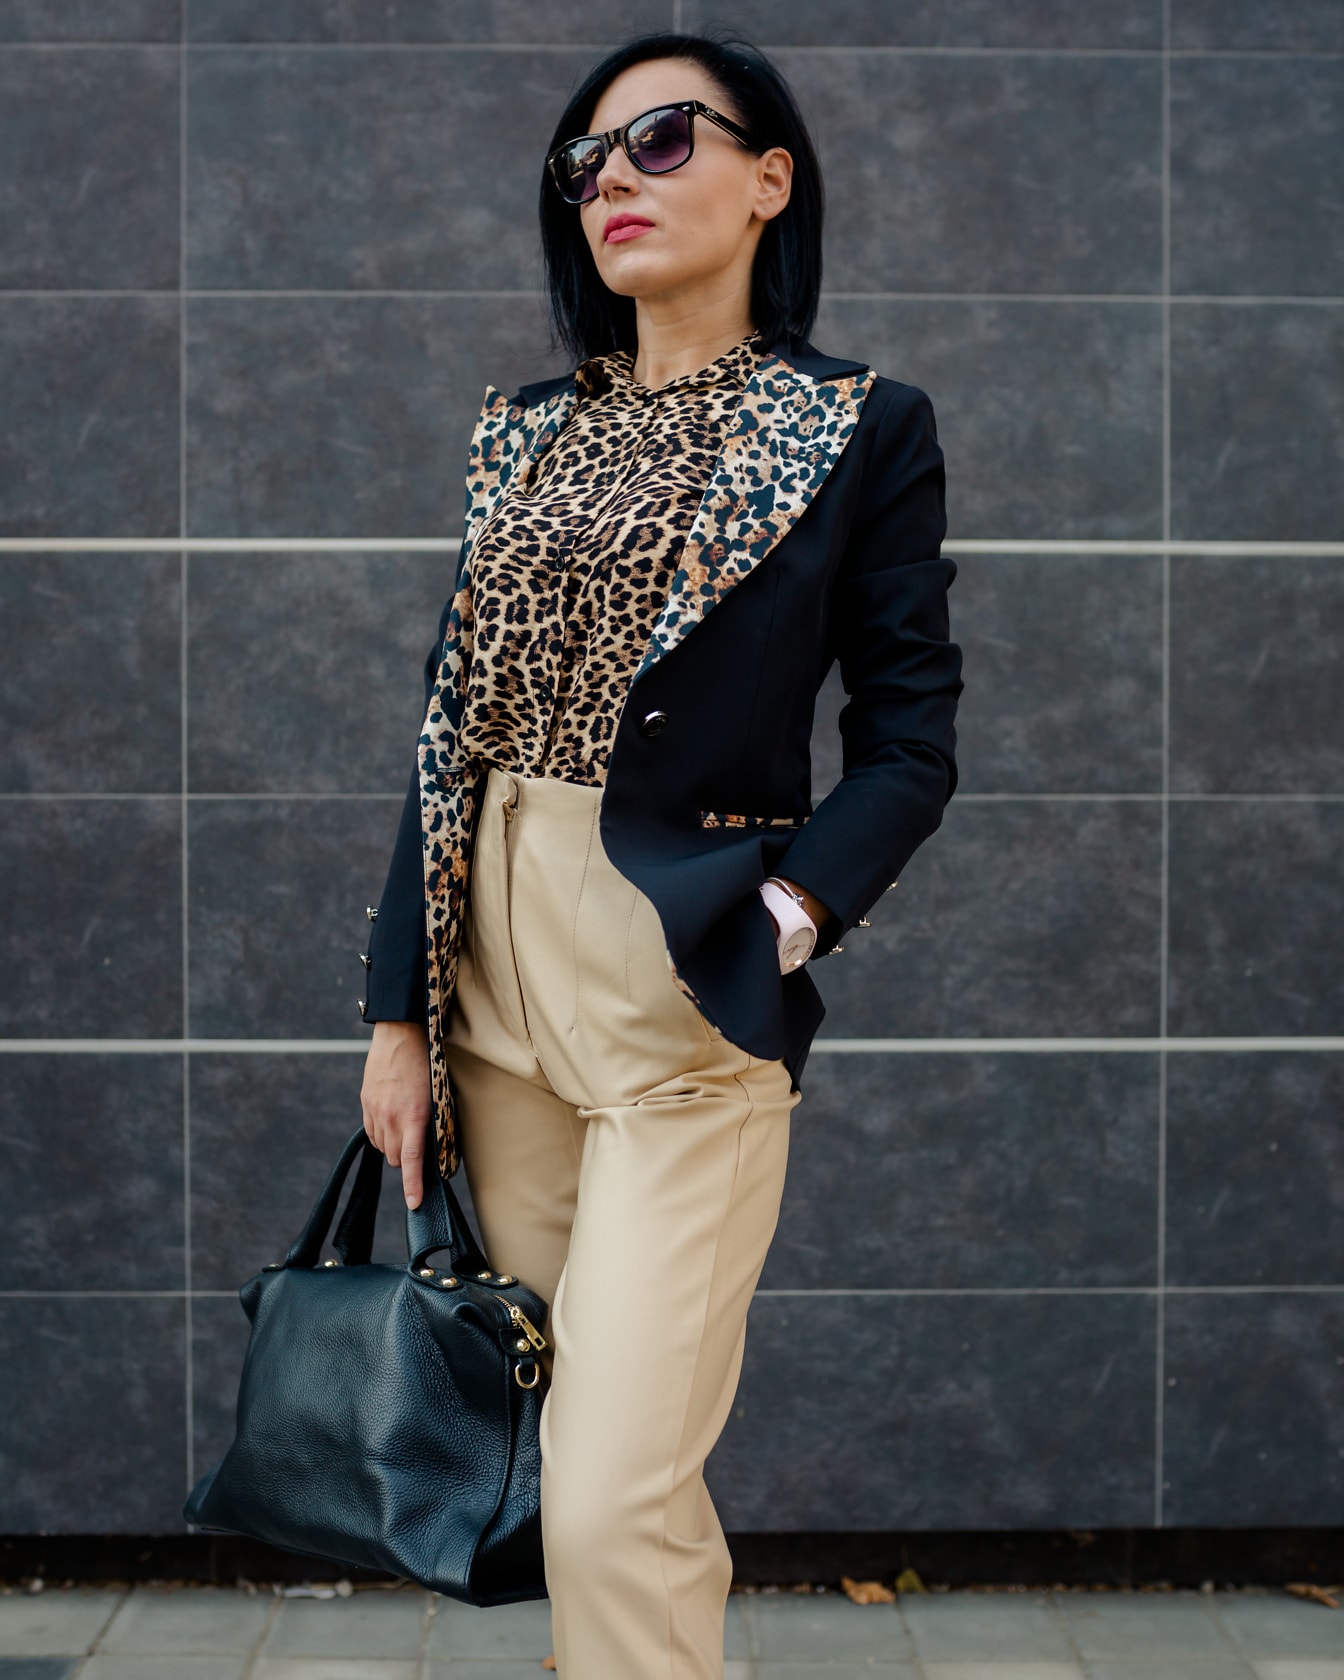 Komea bisnesnainen leopardikuvioisessa puvussa ja kirkkaissa housuissa poseeraa musta nahkalaukku kädessään